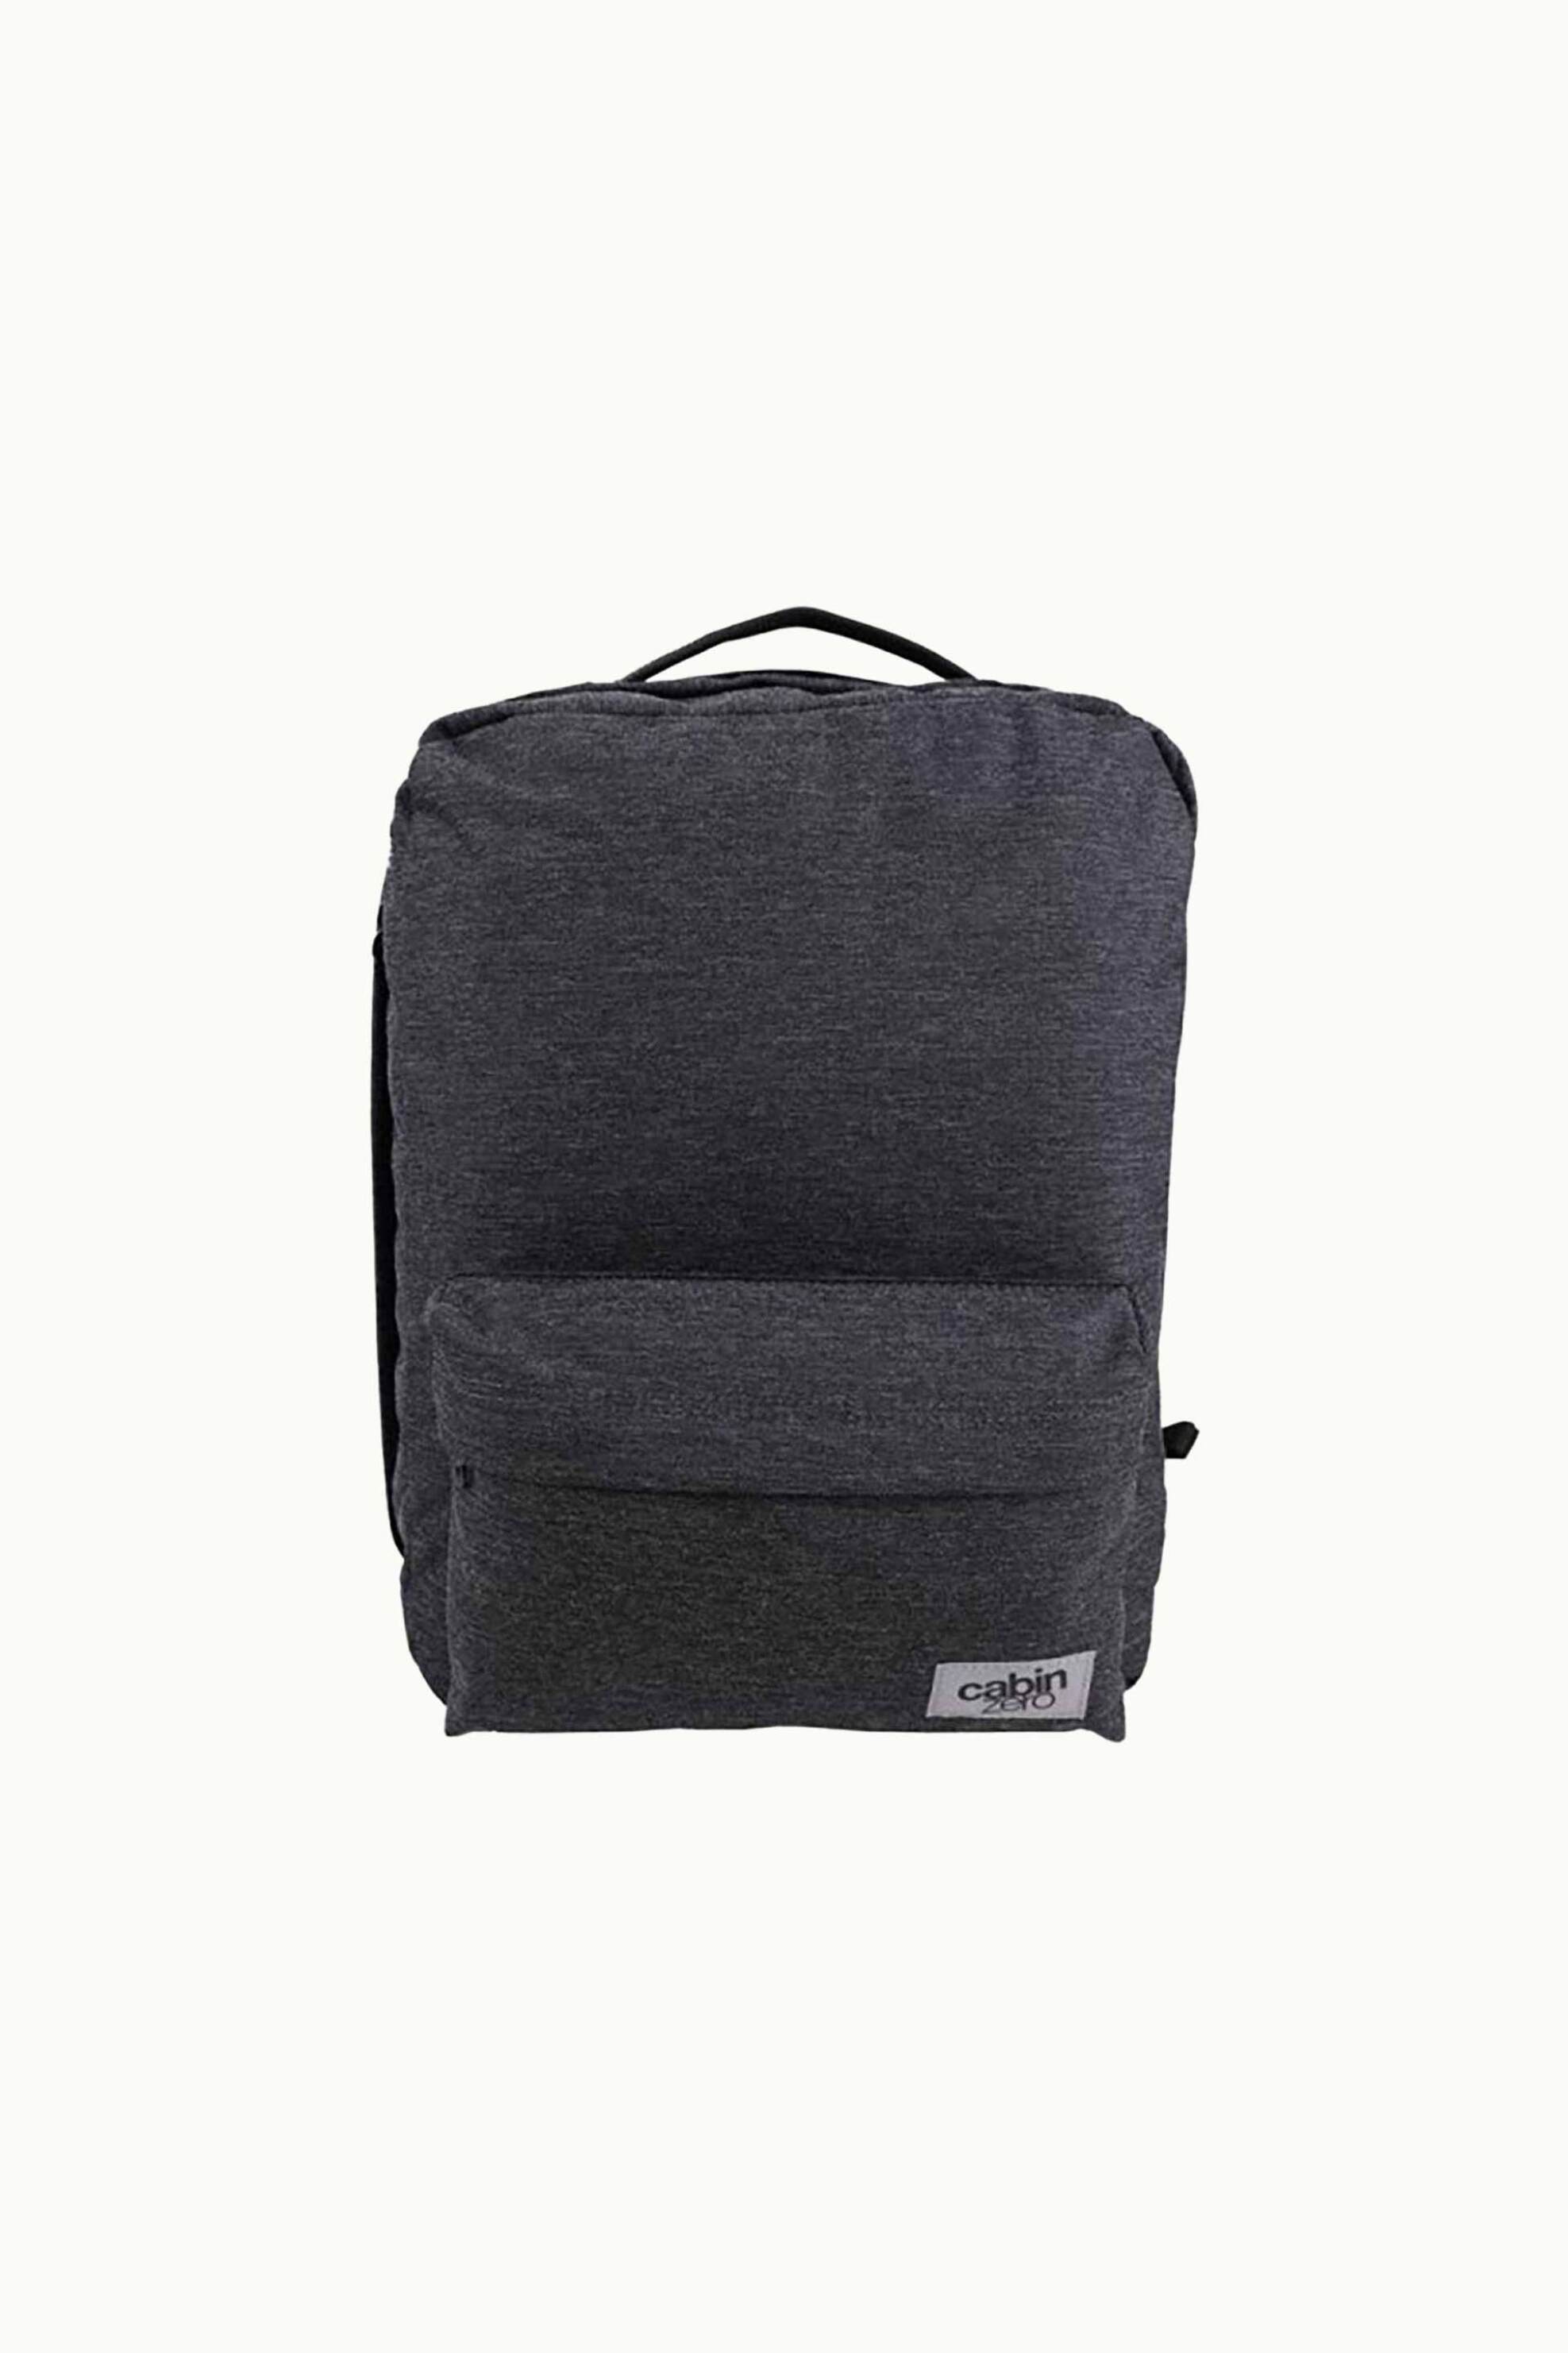 Ανδρική Μόδα > Ανδρικές Τσάντες > Ανδρικά Σακίδια & Backpacks Cabin Zero unisex backpack 40 x 30 x 20 cm "Gap Year Dark Melagne" - SZ021920